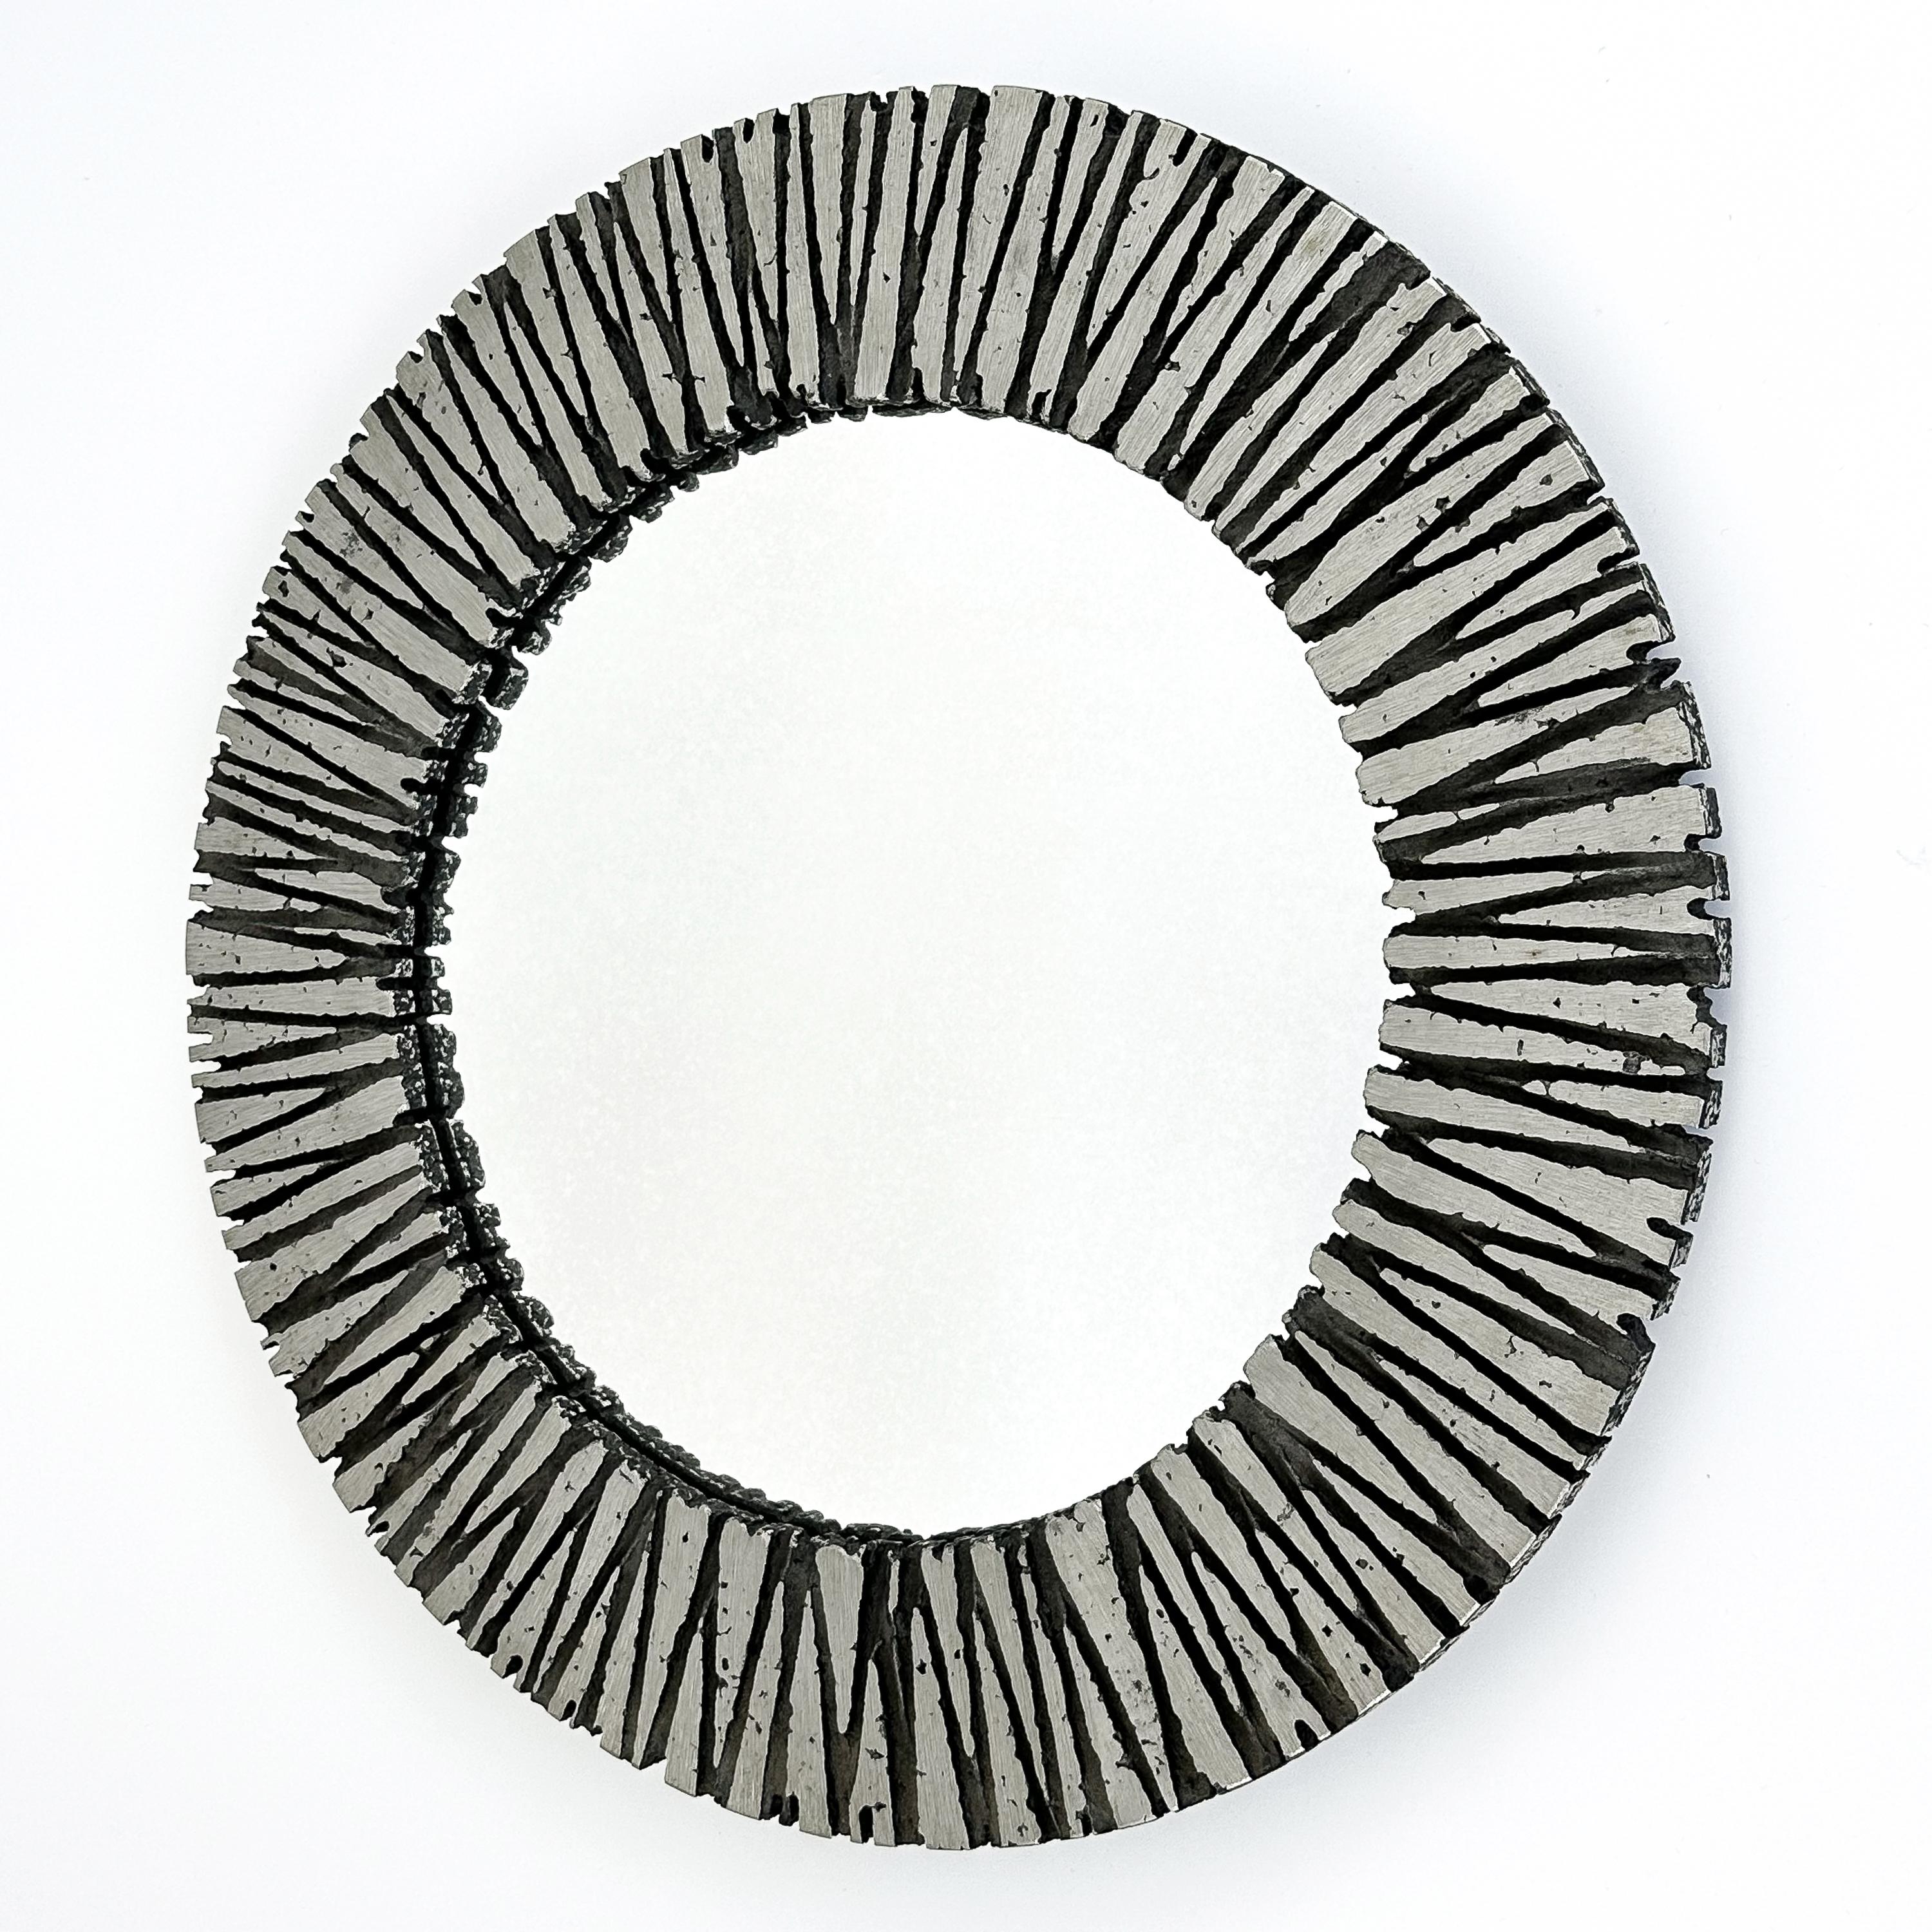 Ce miroir mural rond brutaliste de Willy Ceysens (1929-2007) est un exemple frappant du design innovant et de l'artisanat qui ont caractérisé les années 1960. Originaire de Belgique, l'œuvre est encadrée en aluminium massif, un matériau que Ceysens,